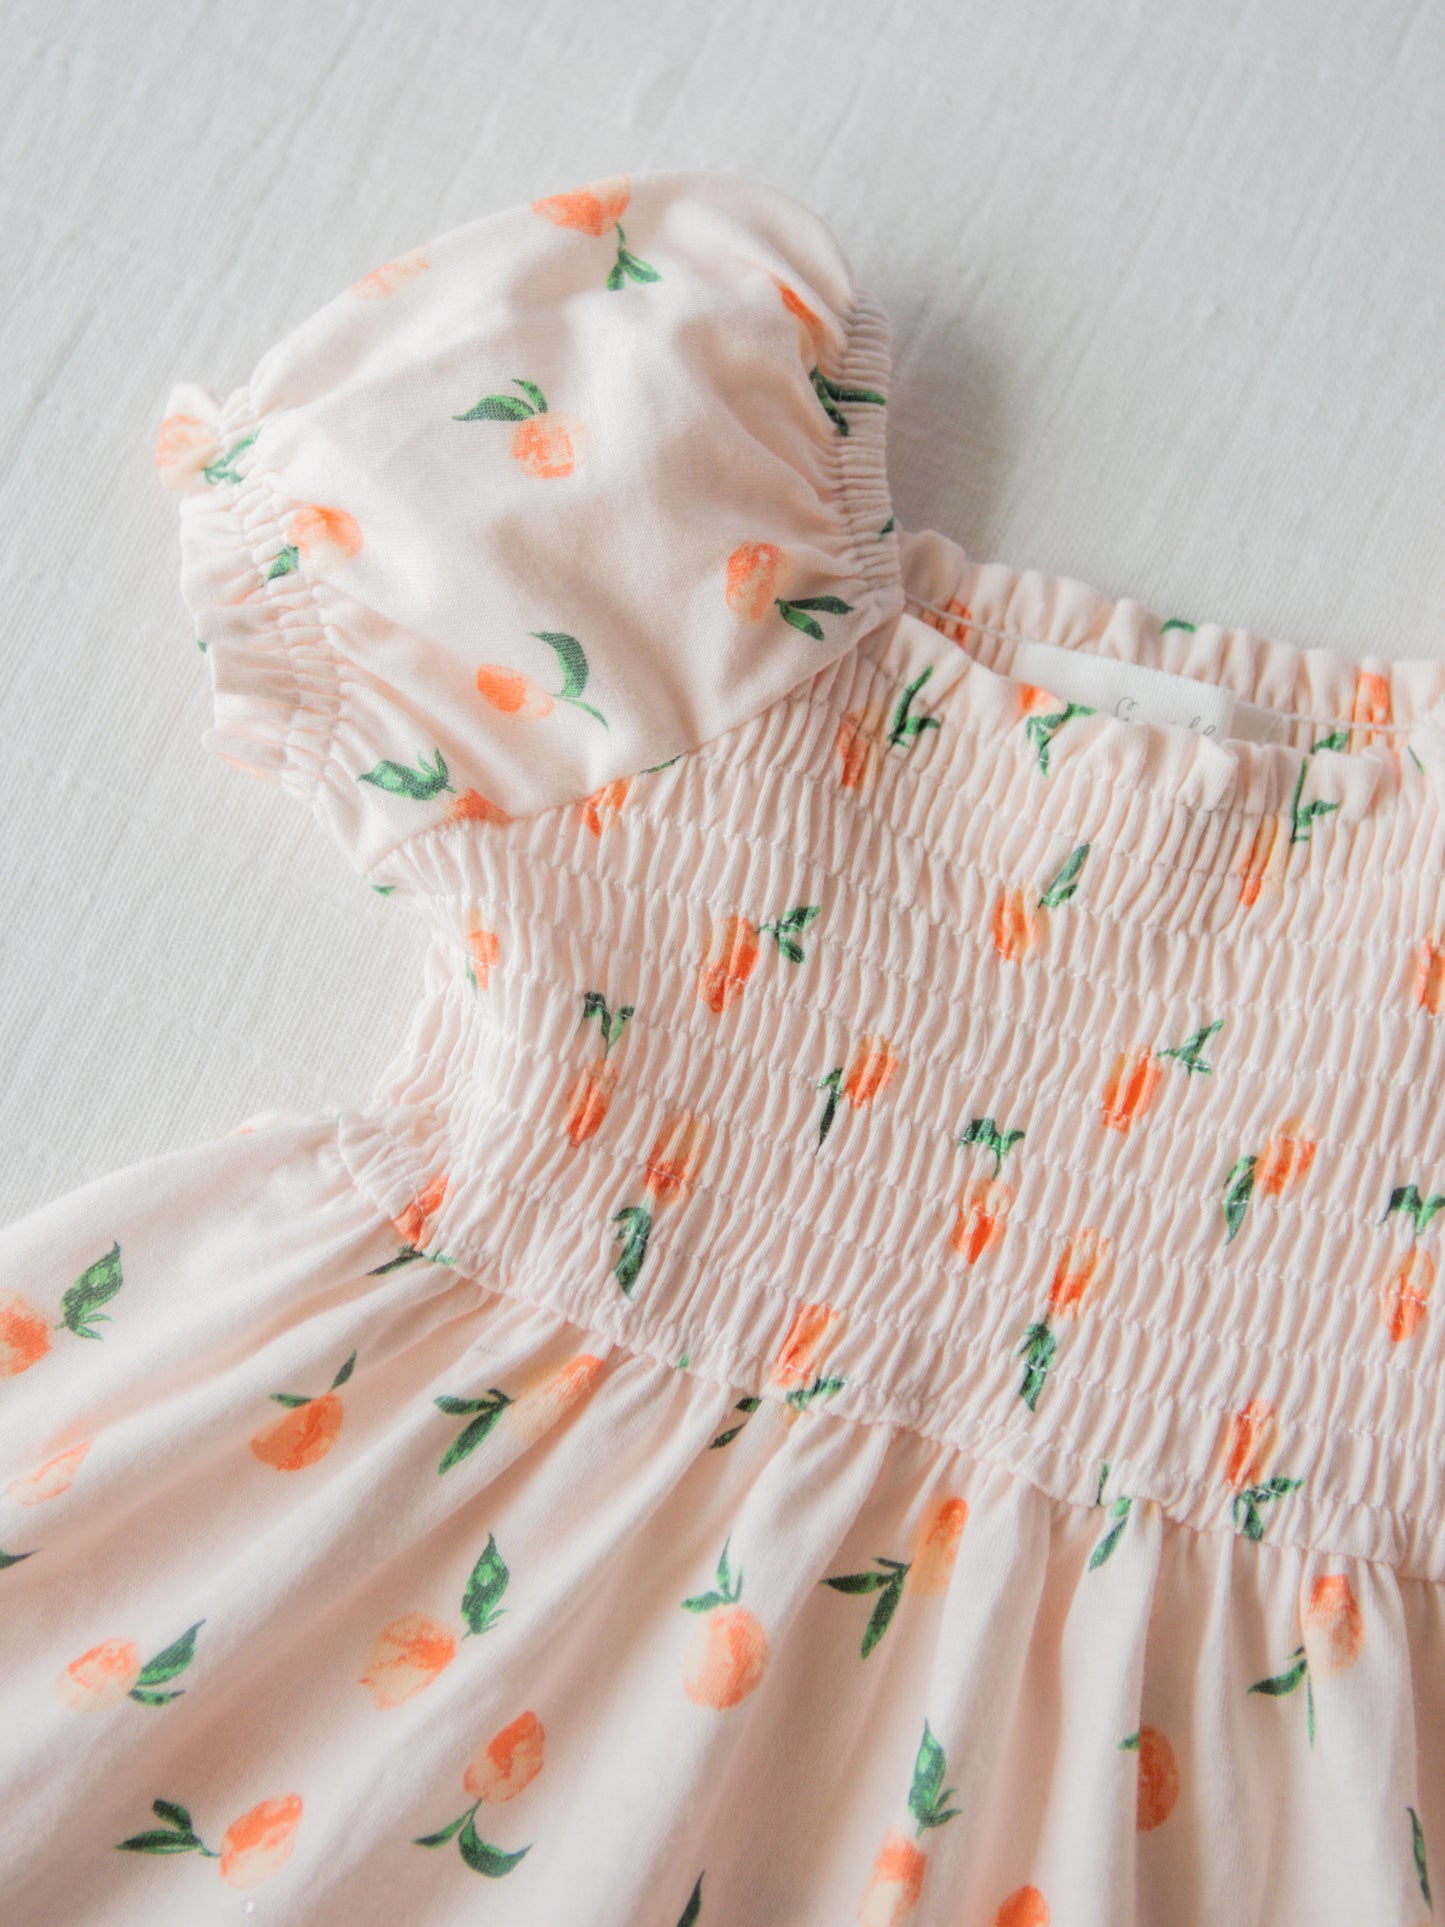 Puff Sleeve Dress - Peaches